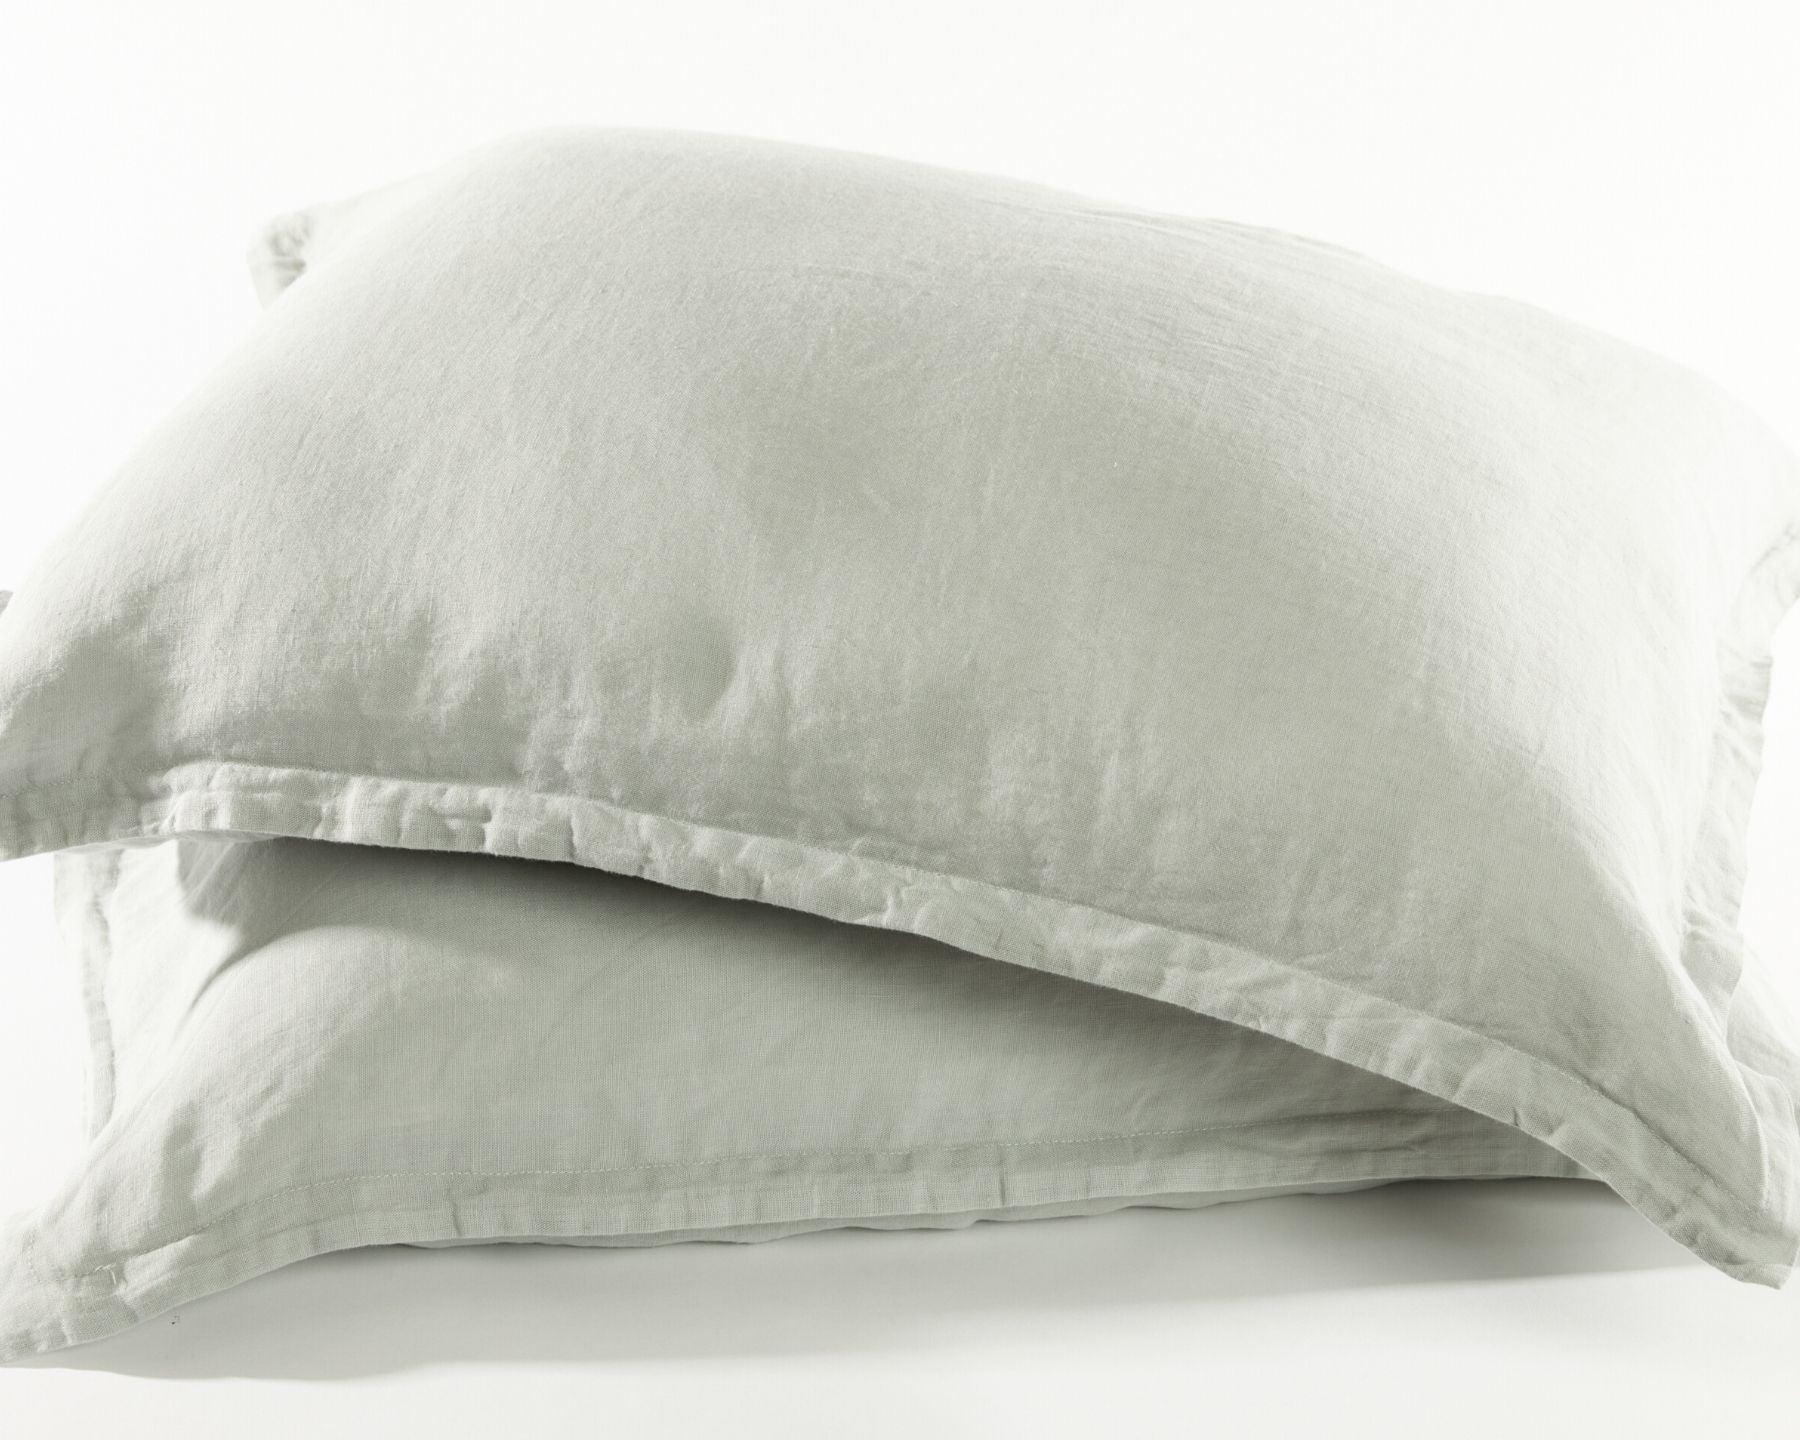 Silver grey organic European linen pillowcases